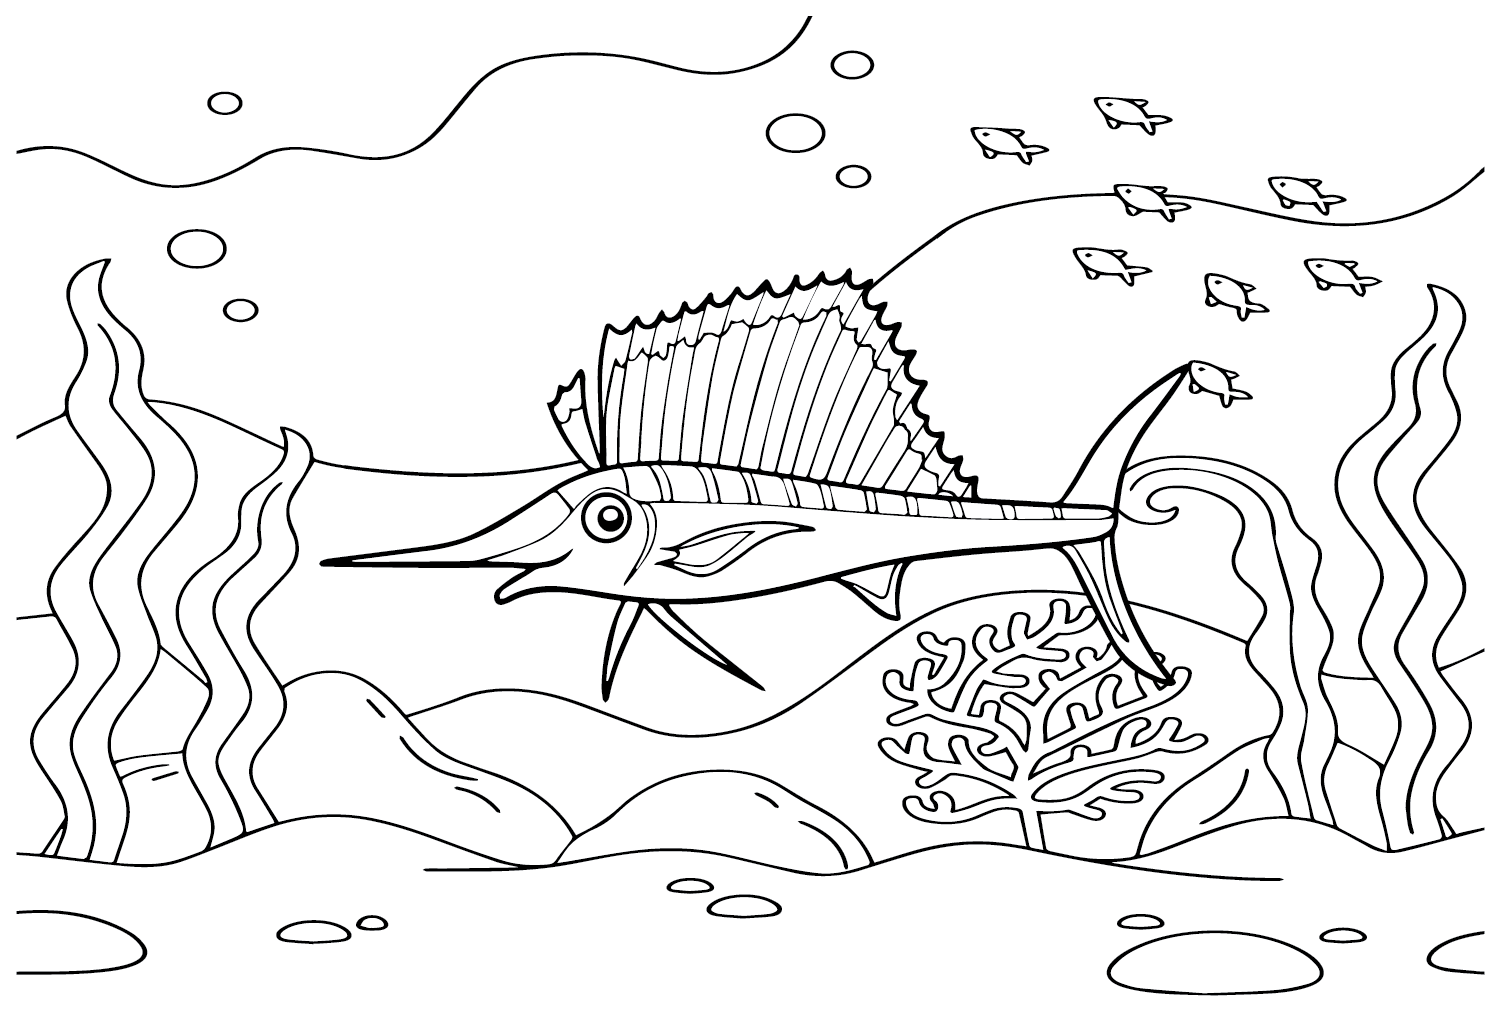 Sailfish de desenho animado de Sailfish